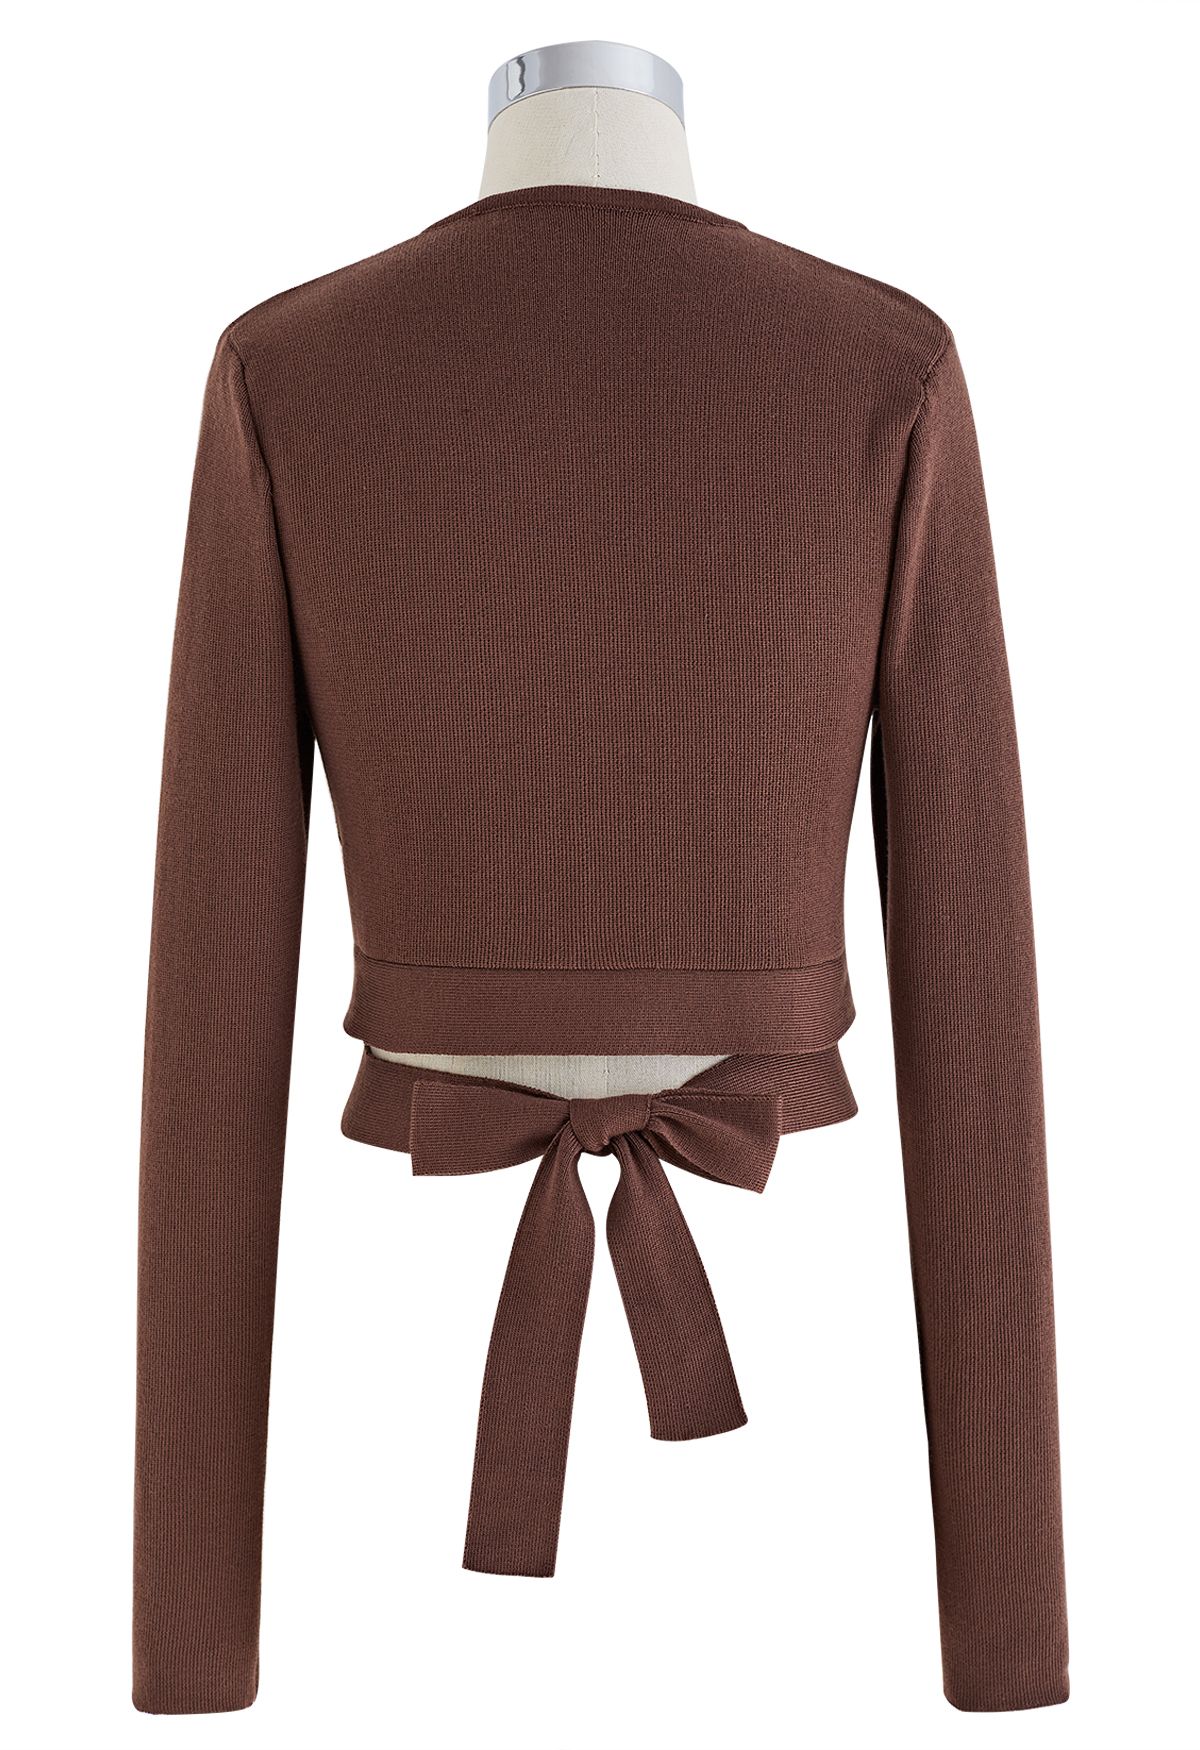 Self-Tie Bowknot Knit Crop Top in Brown